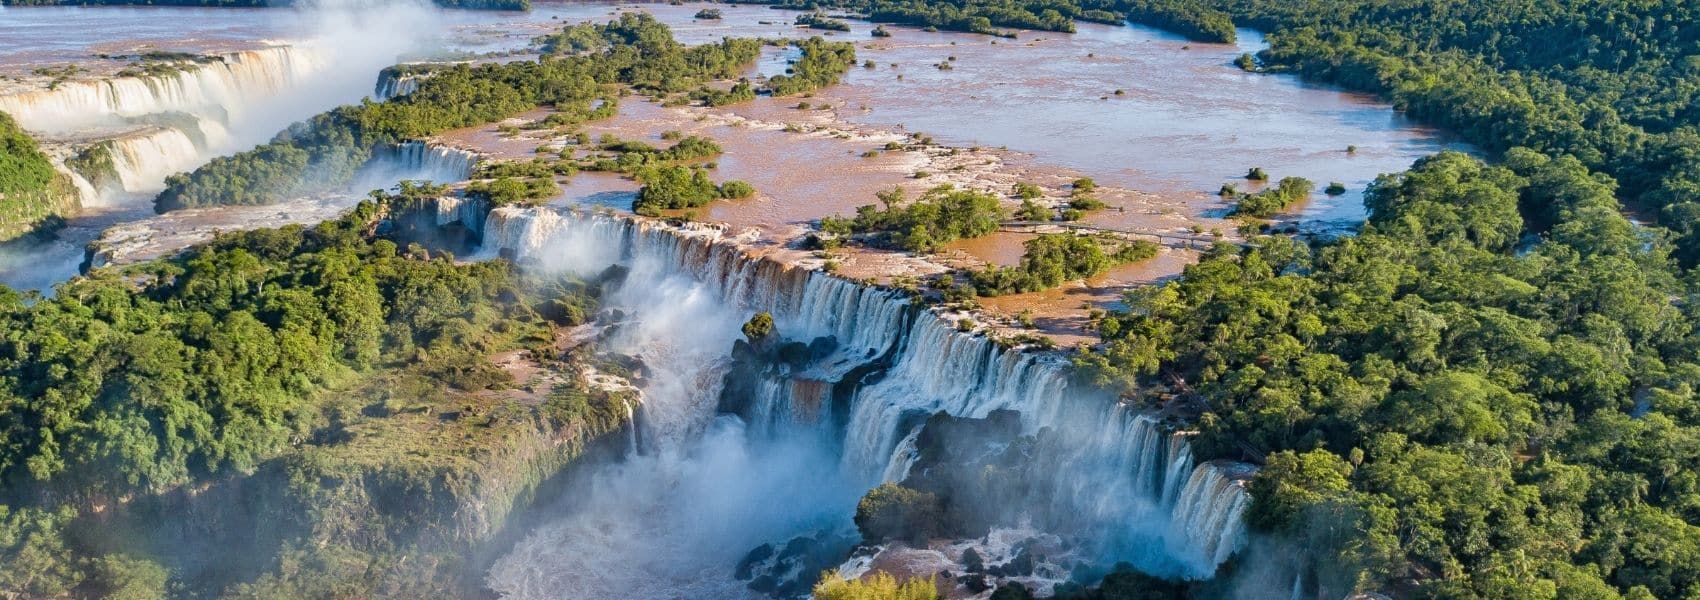 Cosa vedere in argentina foto delle cascate